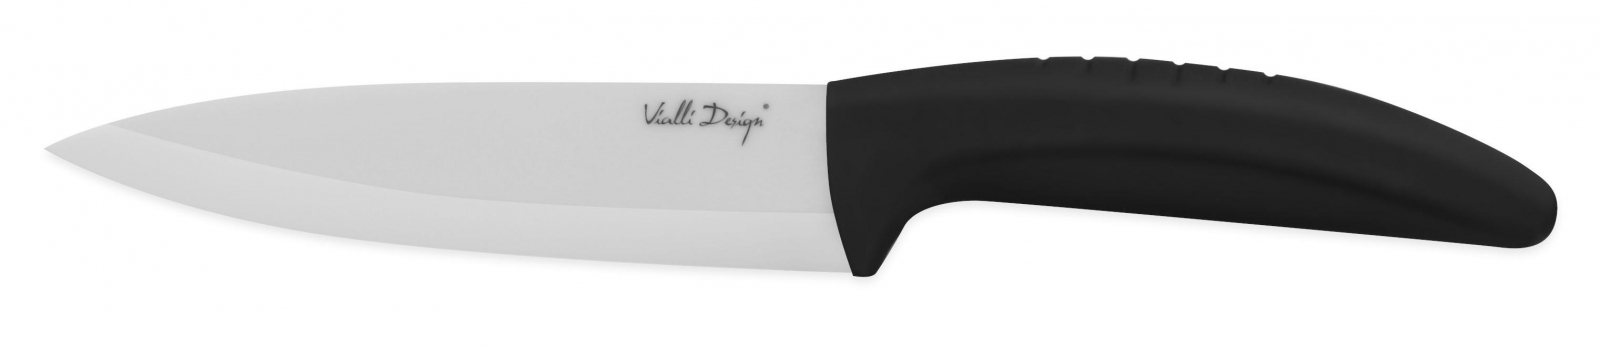 Nóż ceramiczny uniwersalny 13 cm W130A Vialli Design